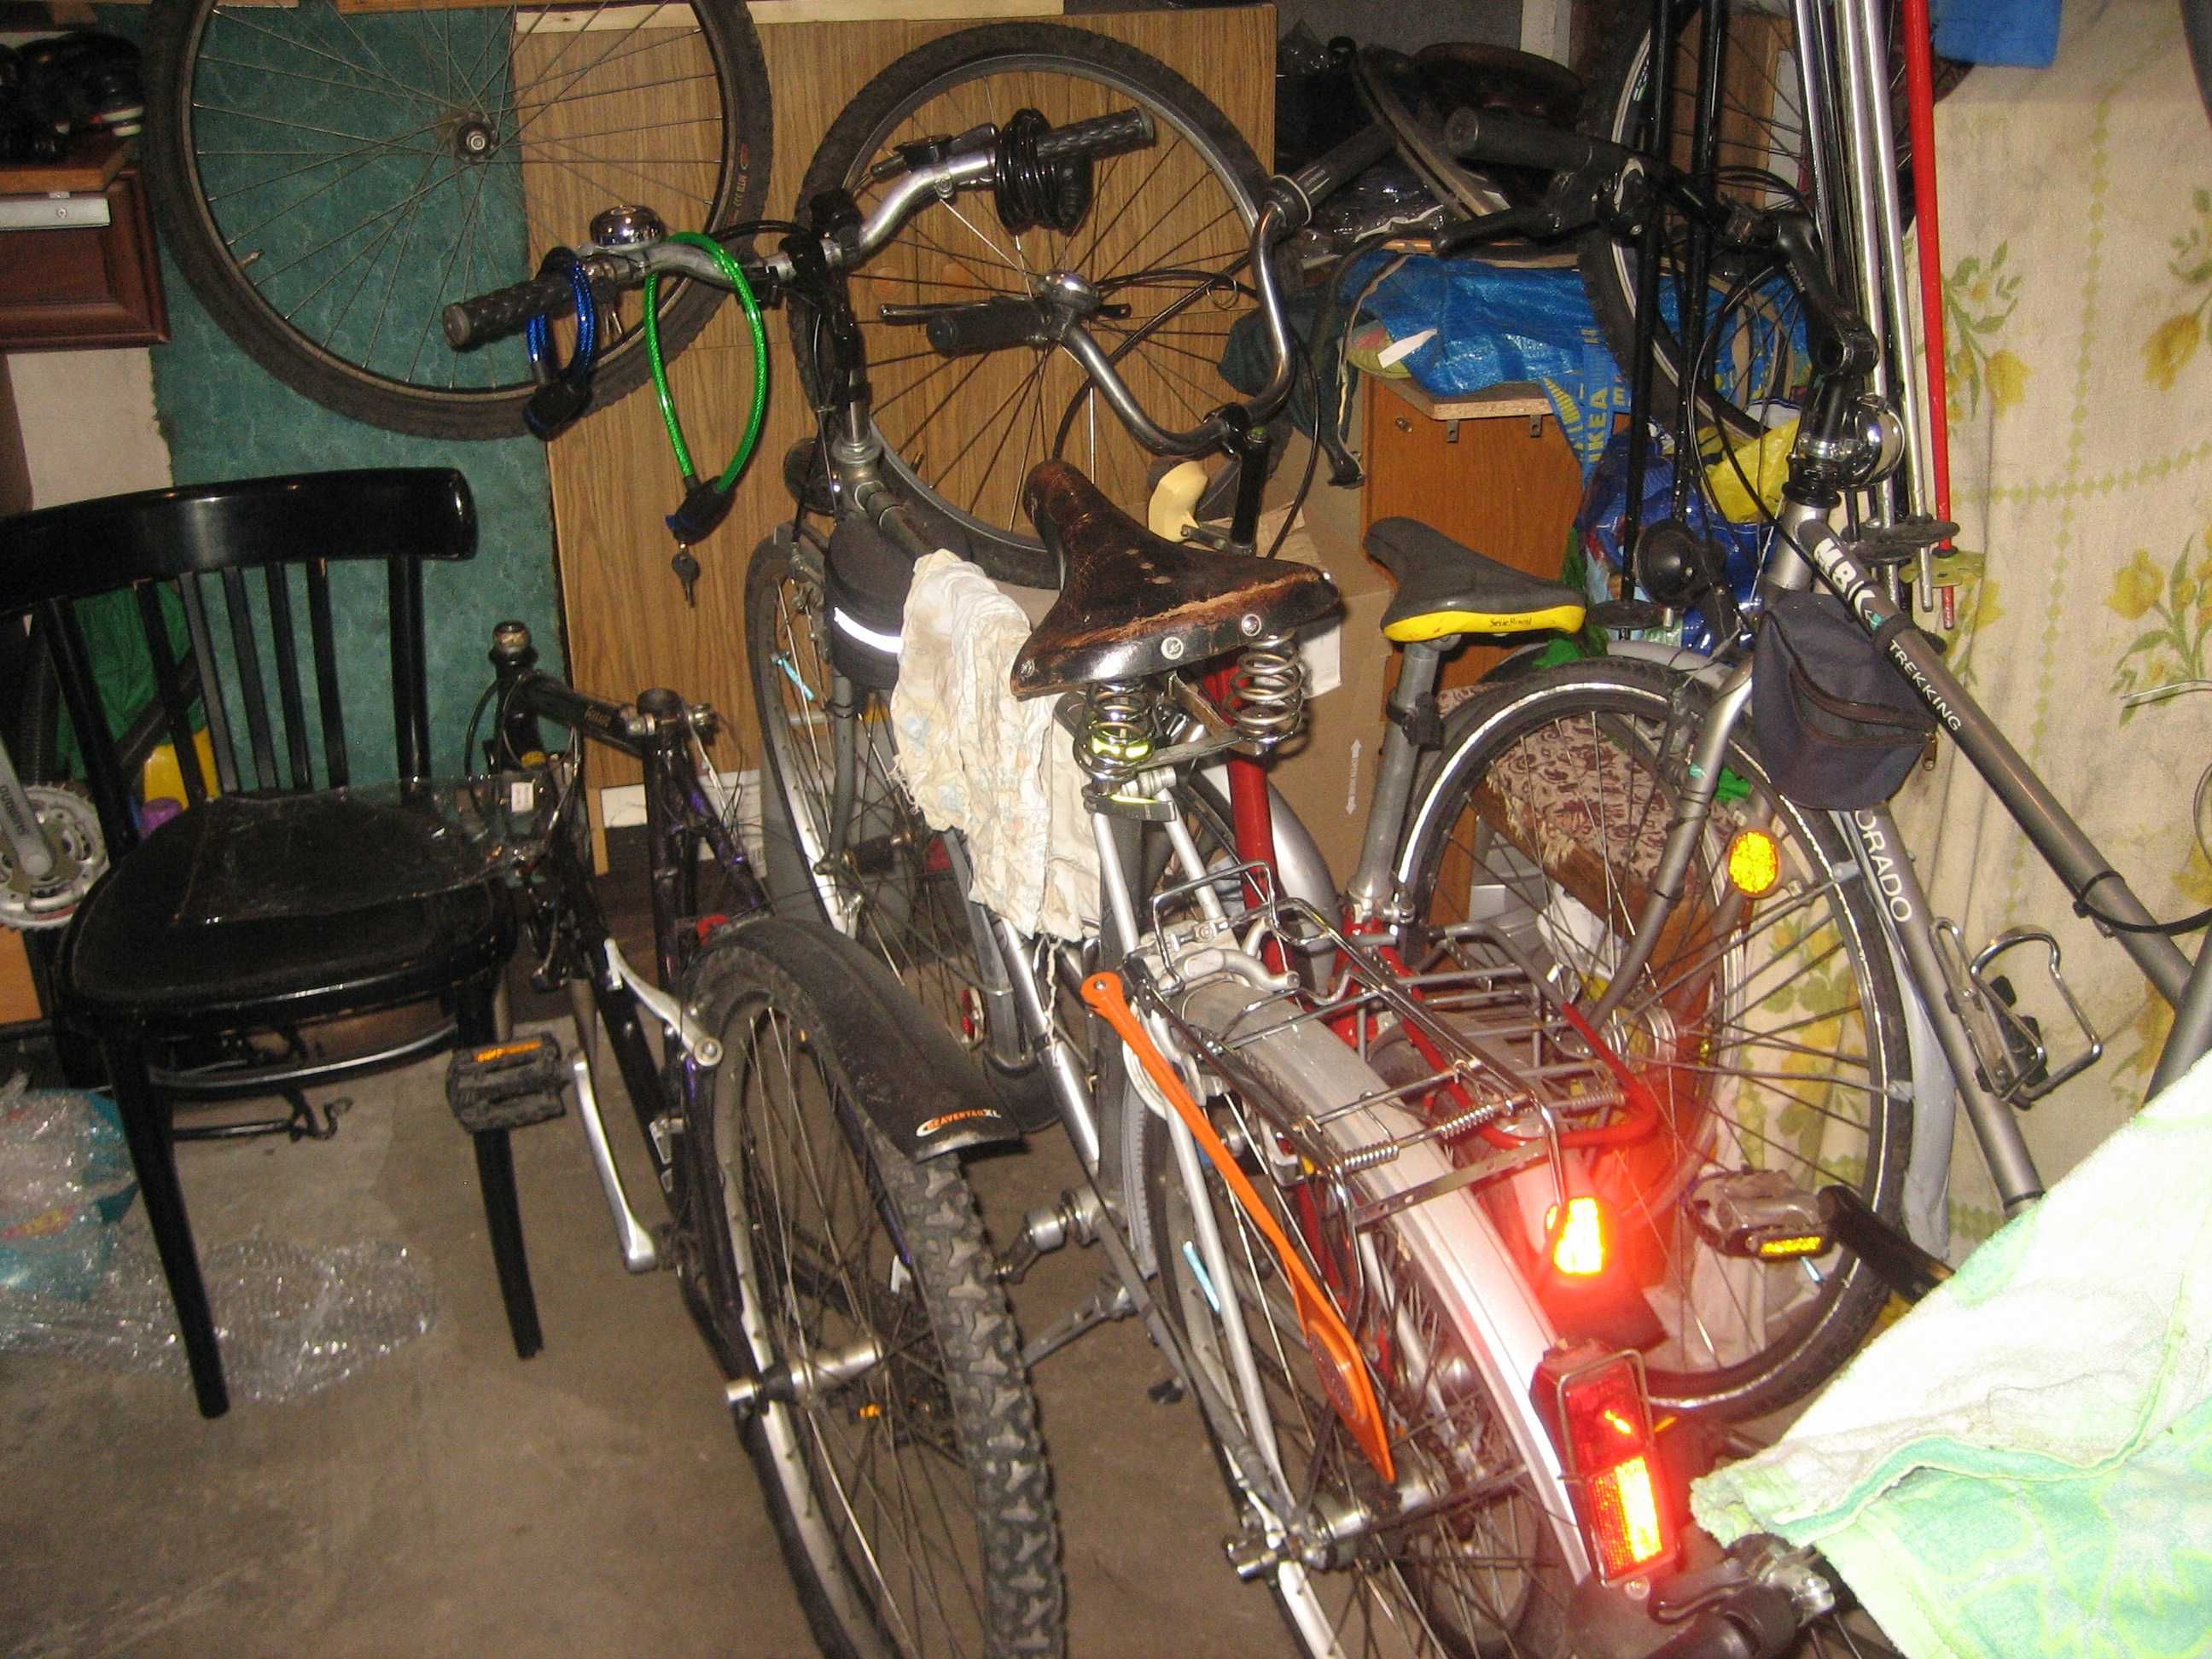 rowery i pozostałe części rowerowe